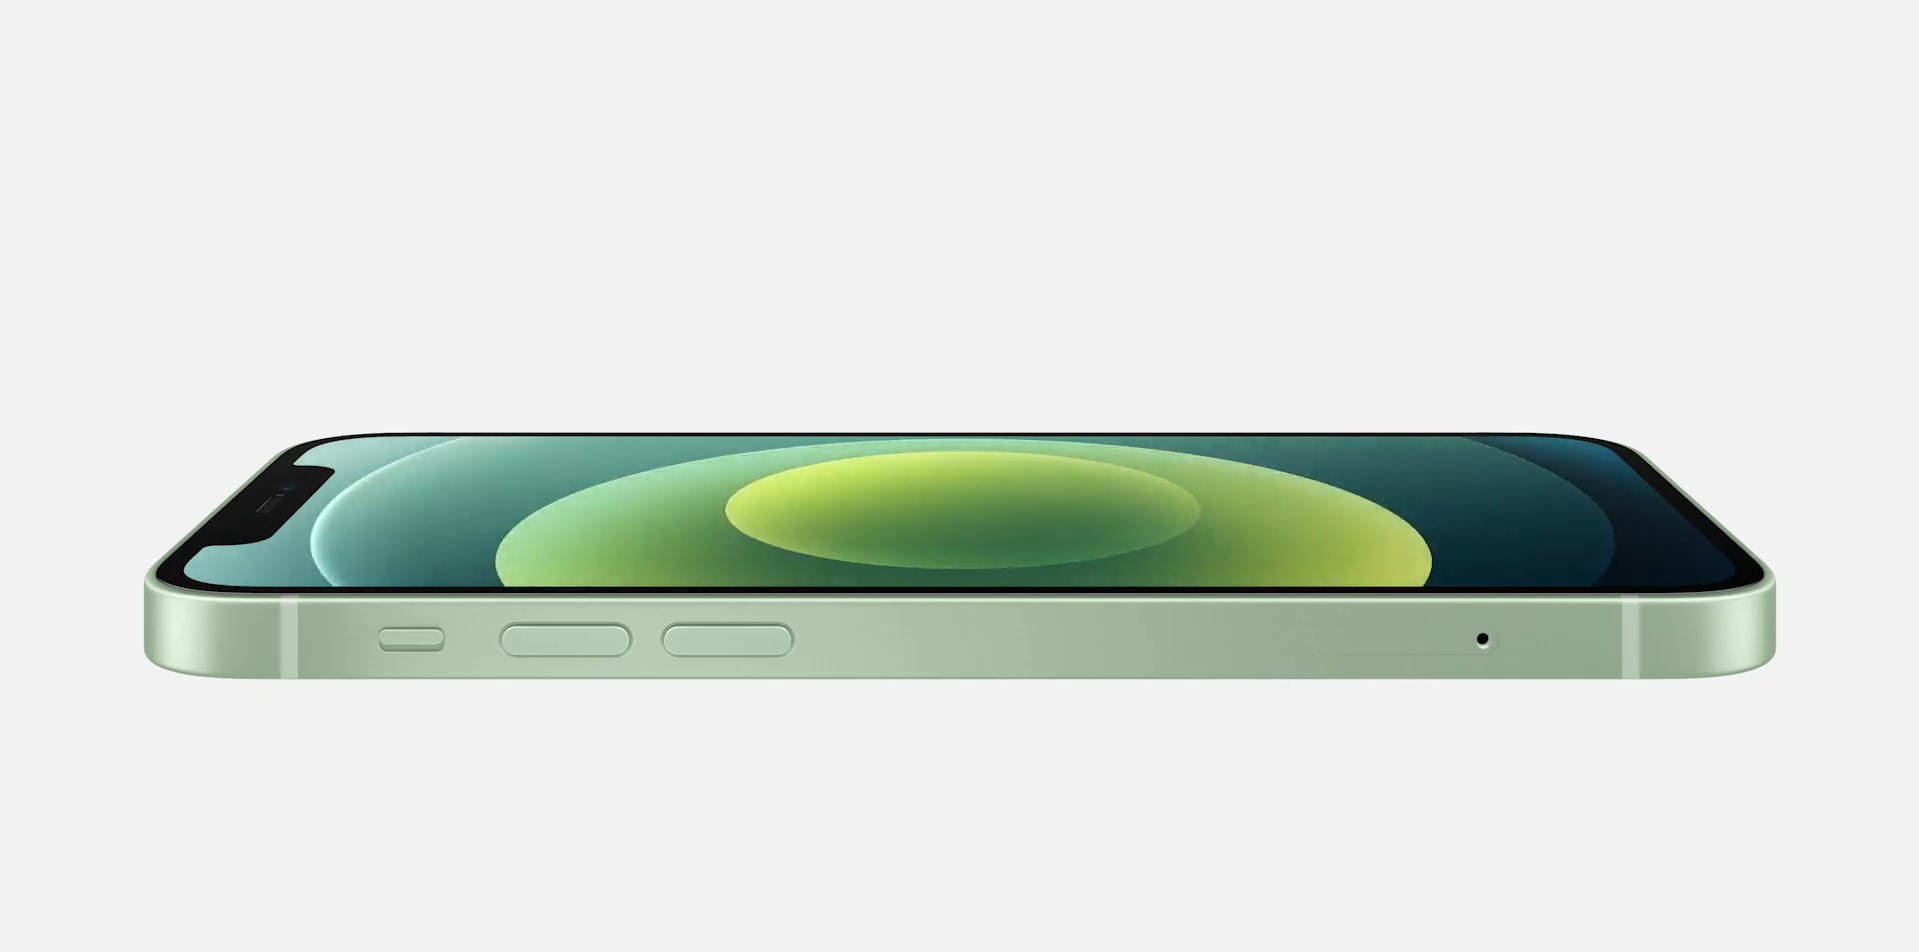 Apple презентовала смартфоны iPhone 12: первые фото новинок - фото 4